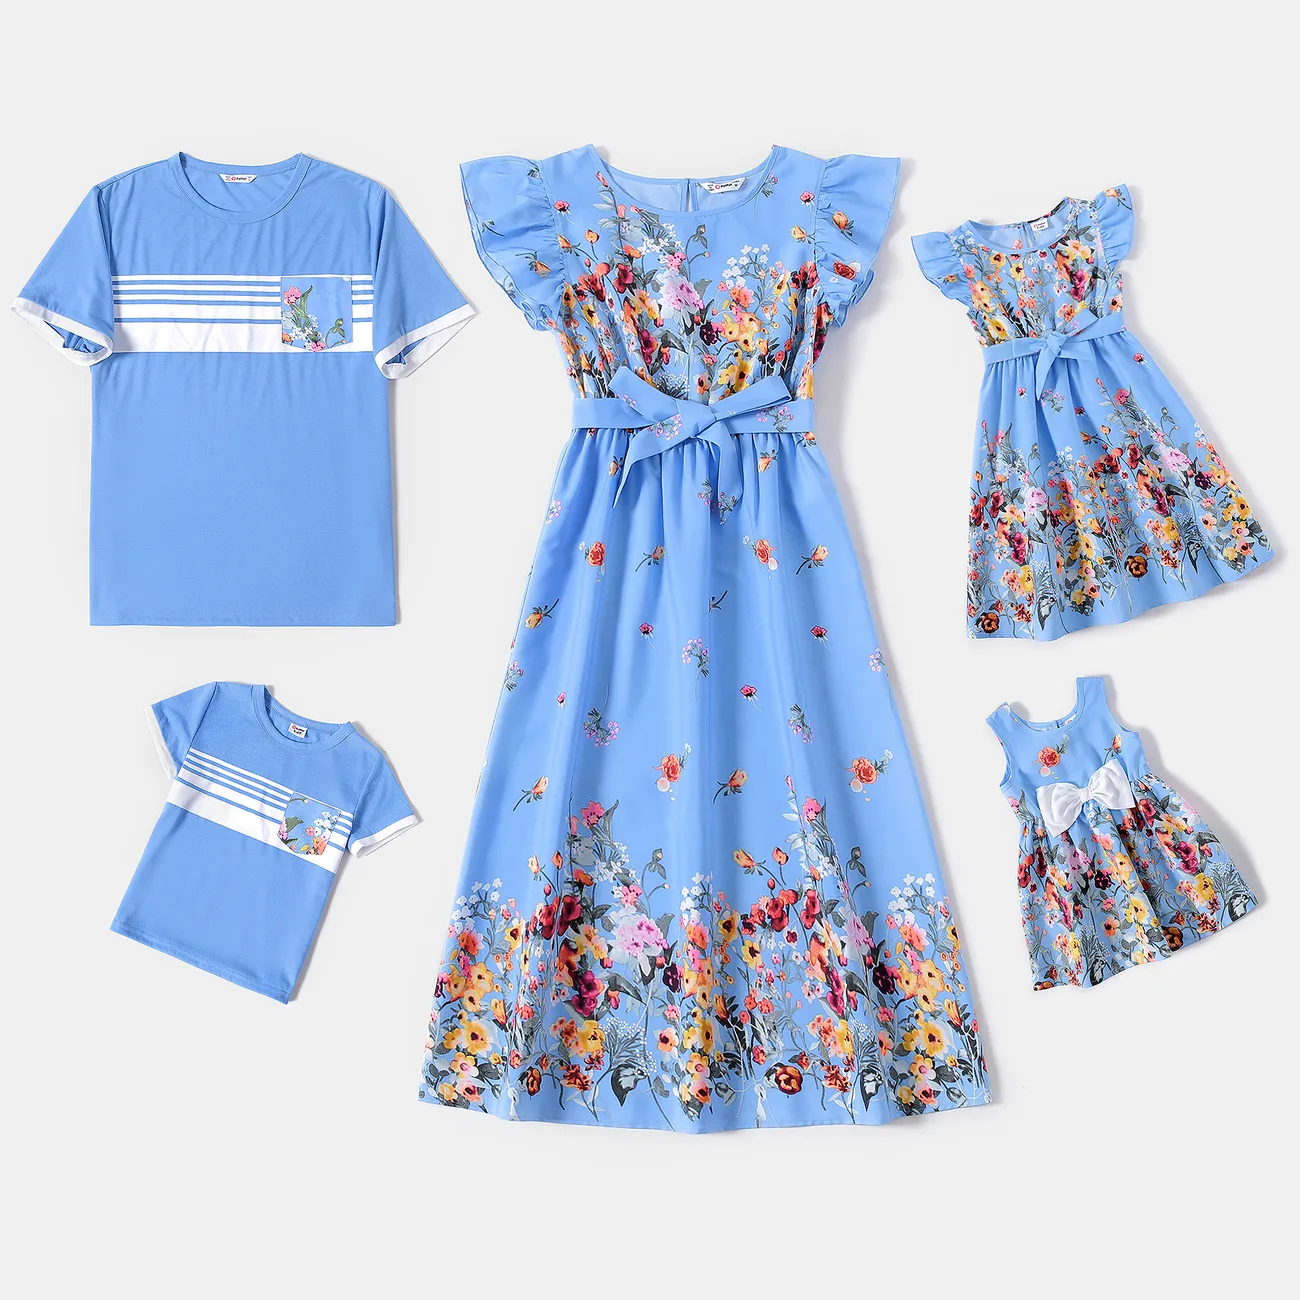 Muttertag Familien-Looks Ärmellos Familien-Outfits Sets blau big image 1